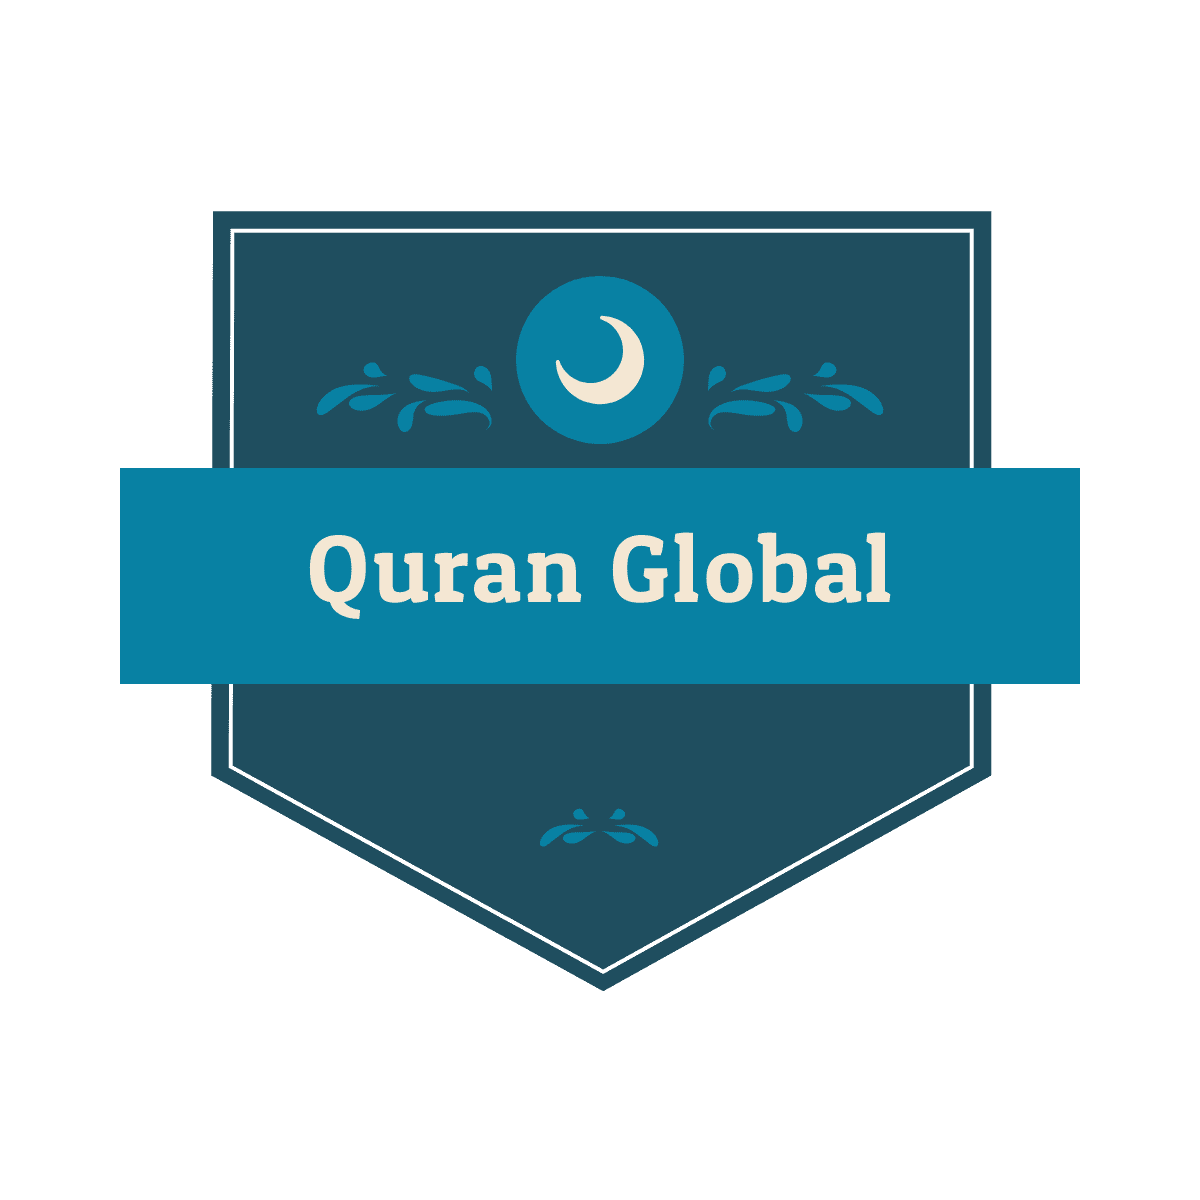 Quran Global